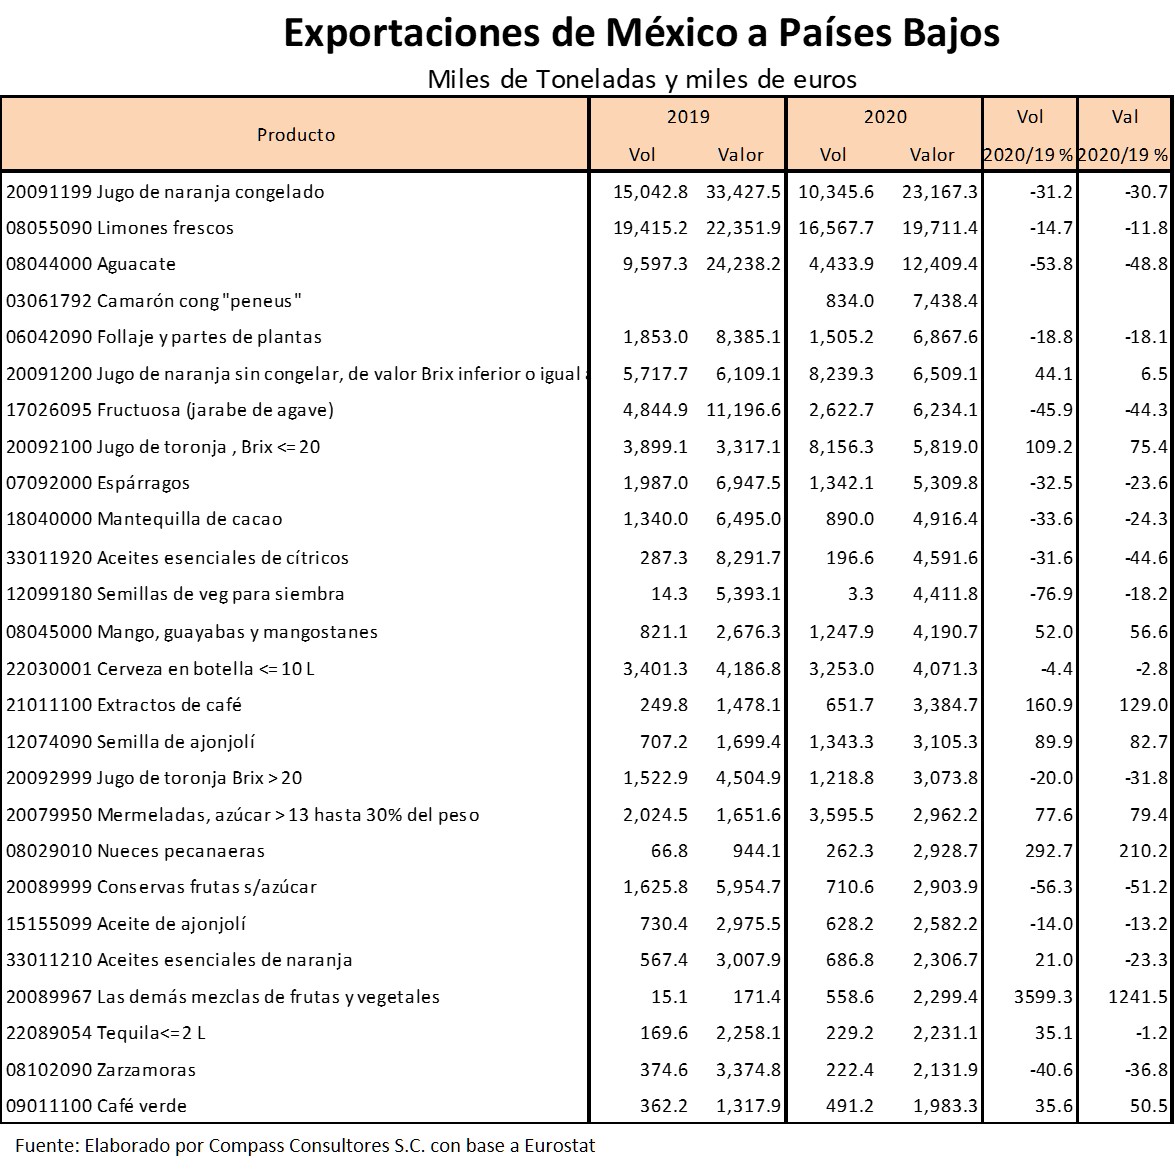 Exportaciones de México a Países Bajos por Producto